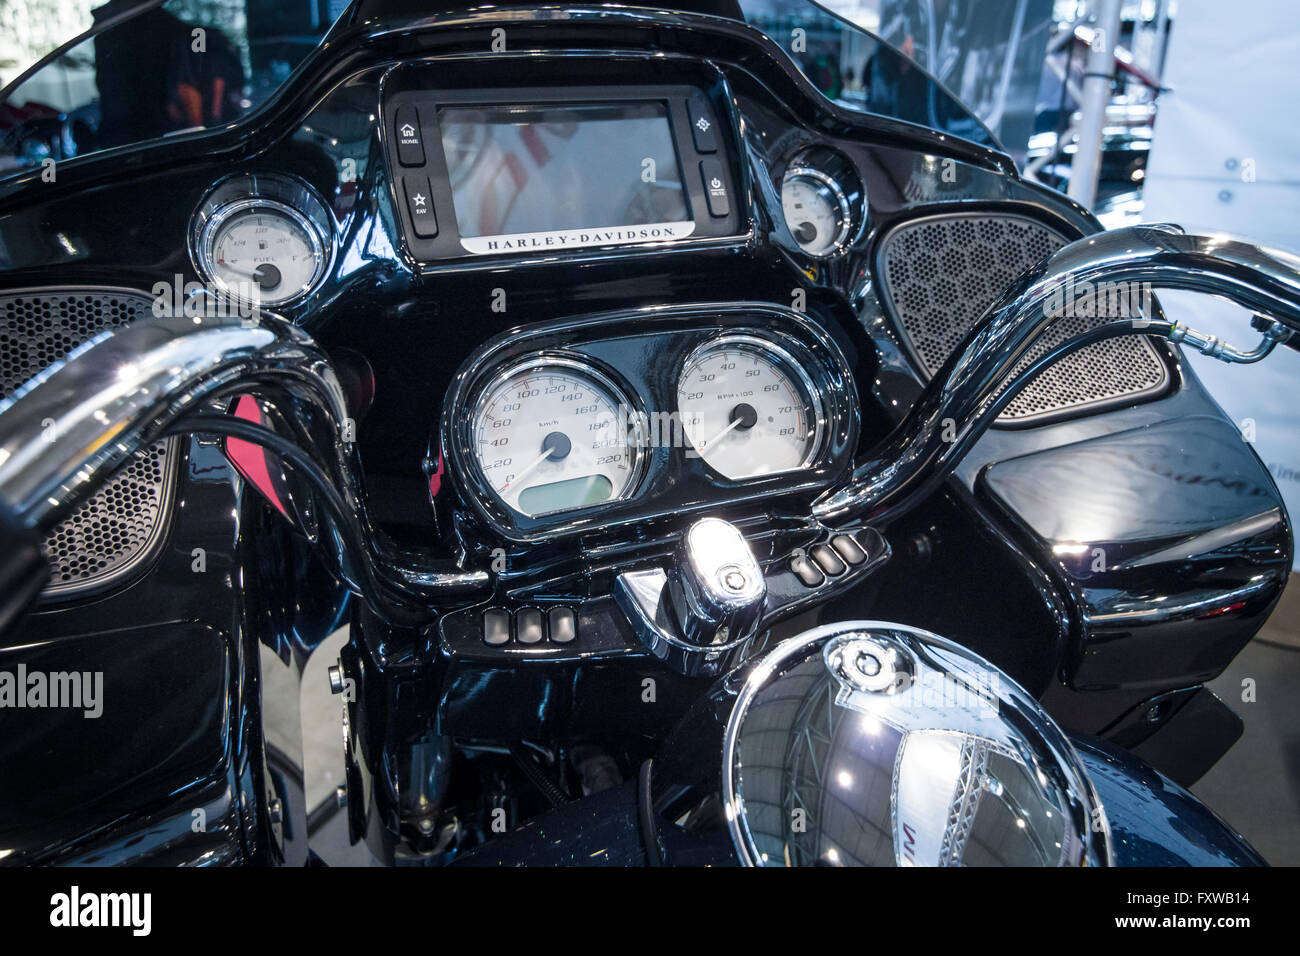 Tacho Fur Harley Davidson Motorrad Im Luxusresort South Beach Miami Florida Vereinigte Staaten Von Amerika Stockfotografie Alamy